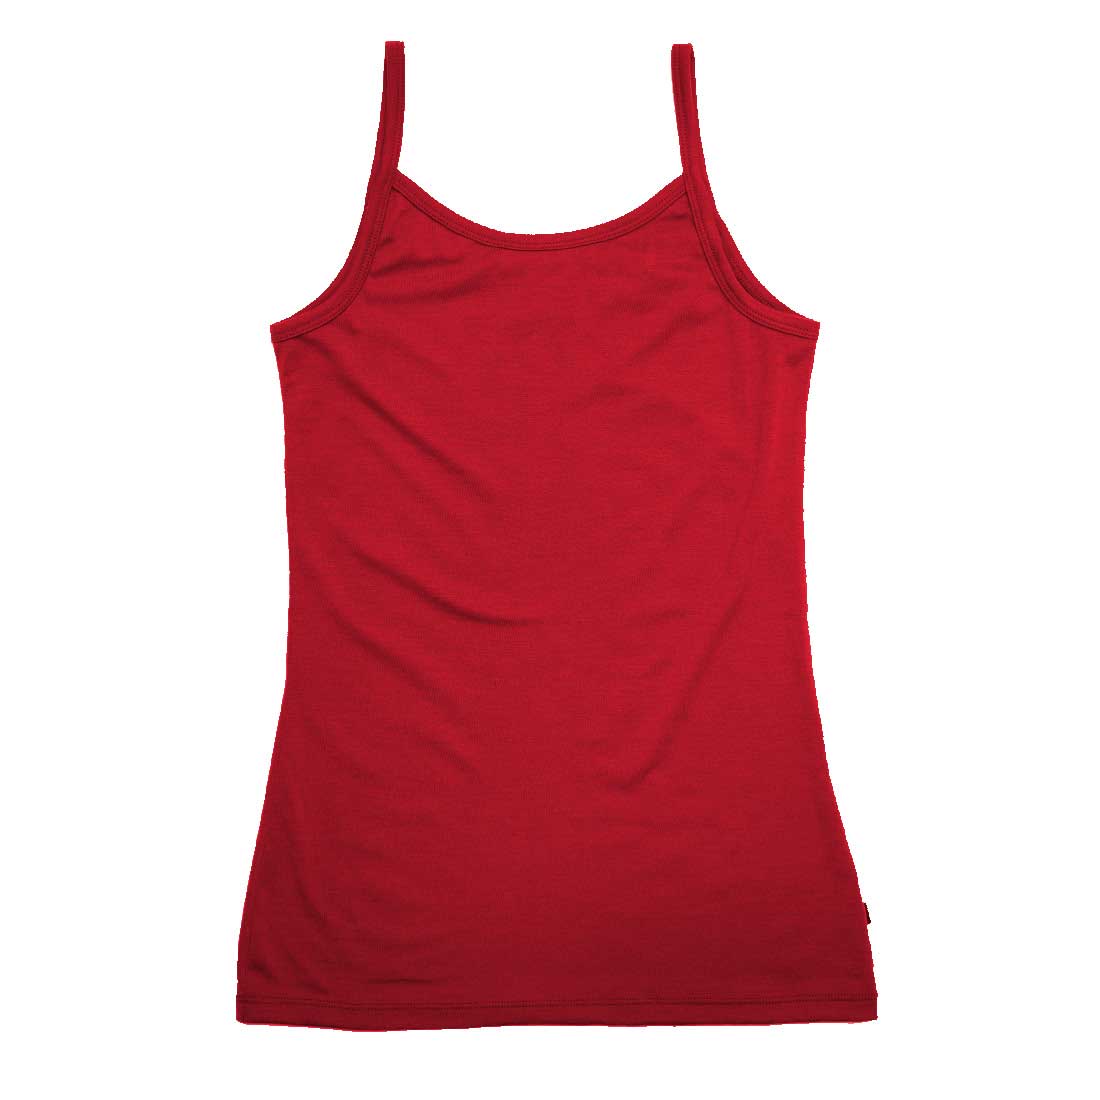 Merino 365 Women's Light Slim Cami Tank - Bright Red